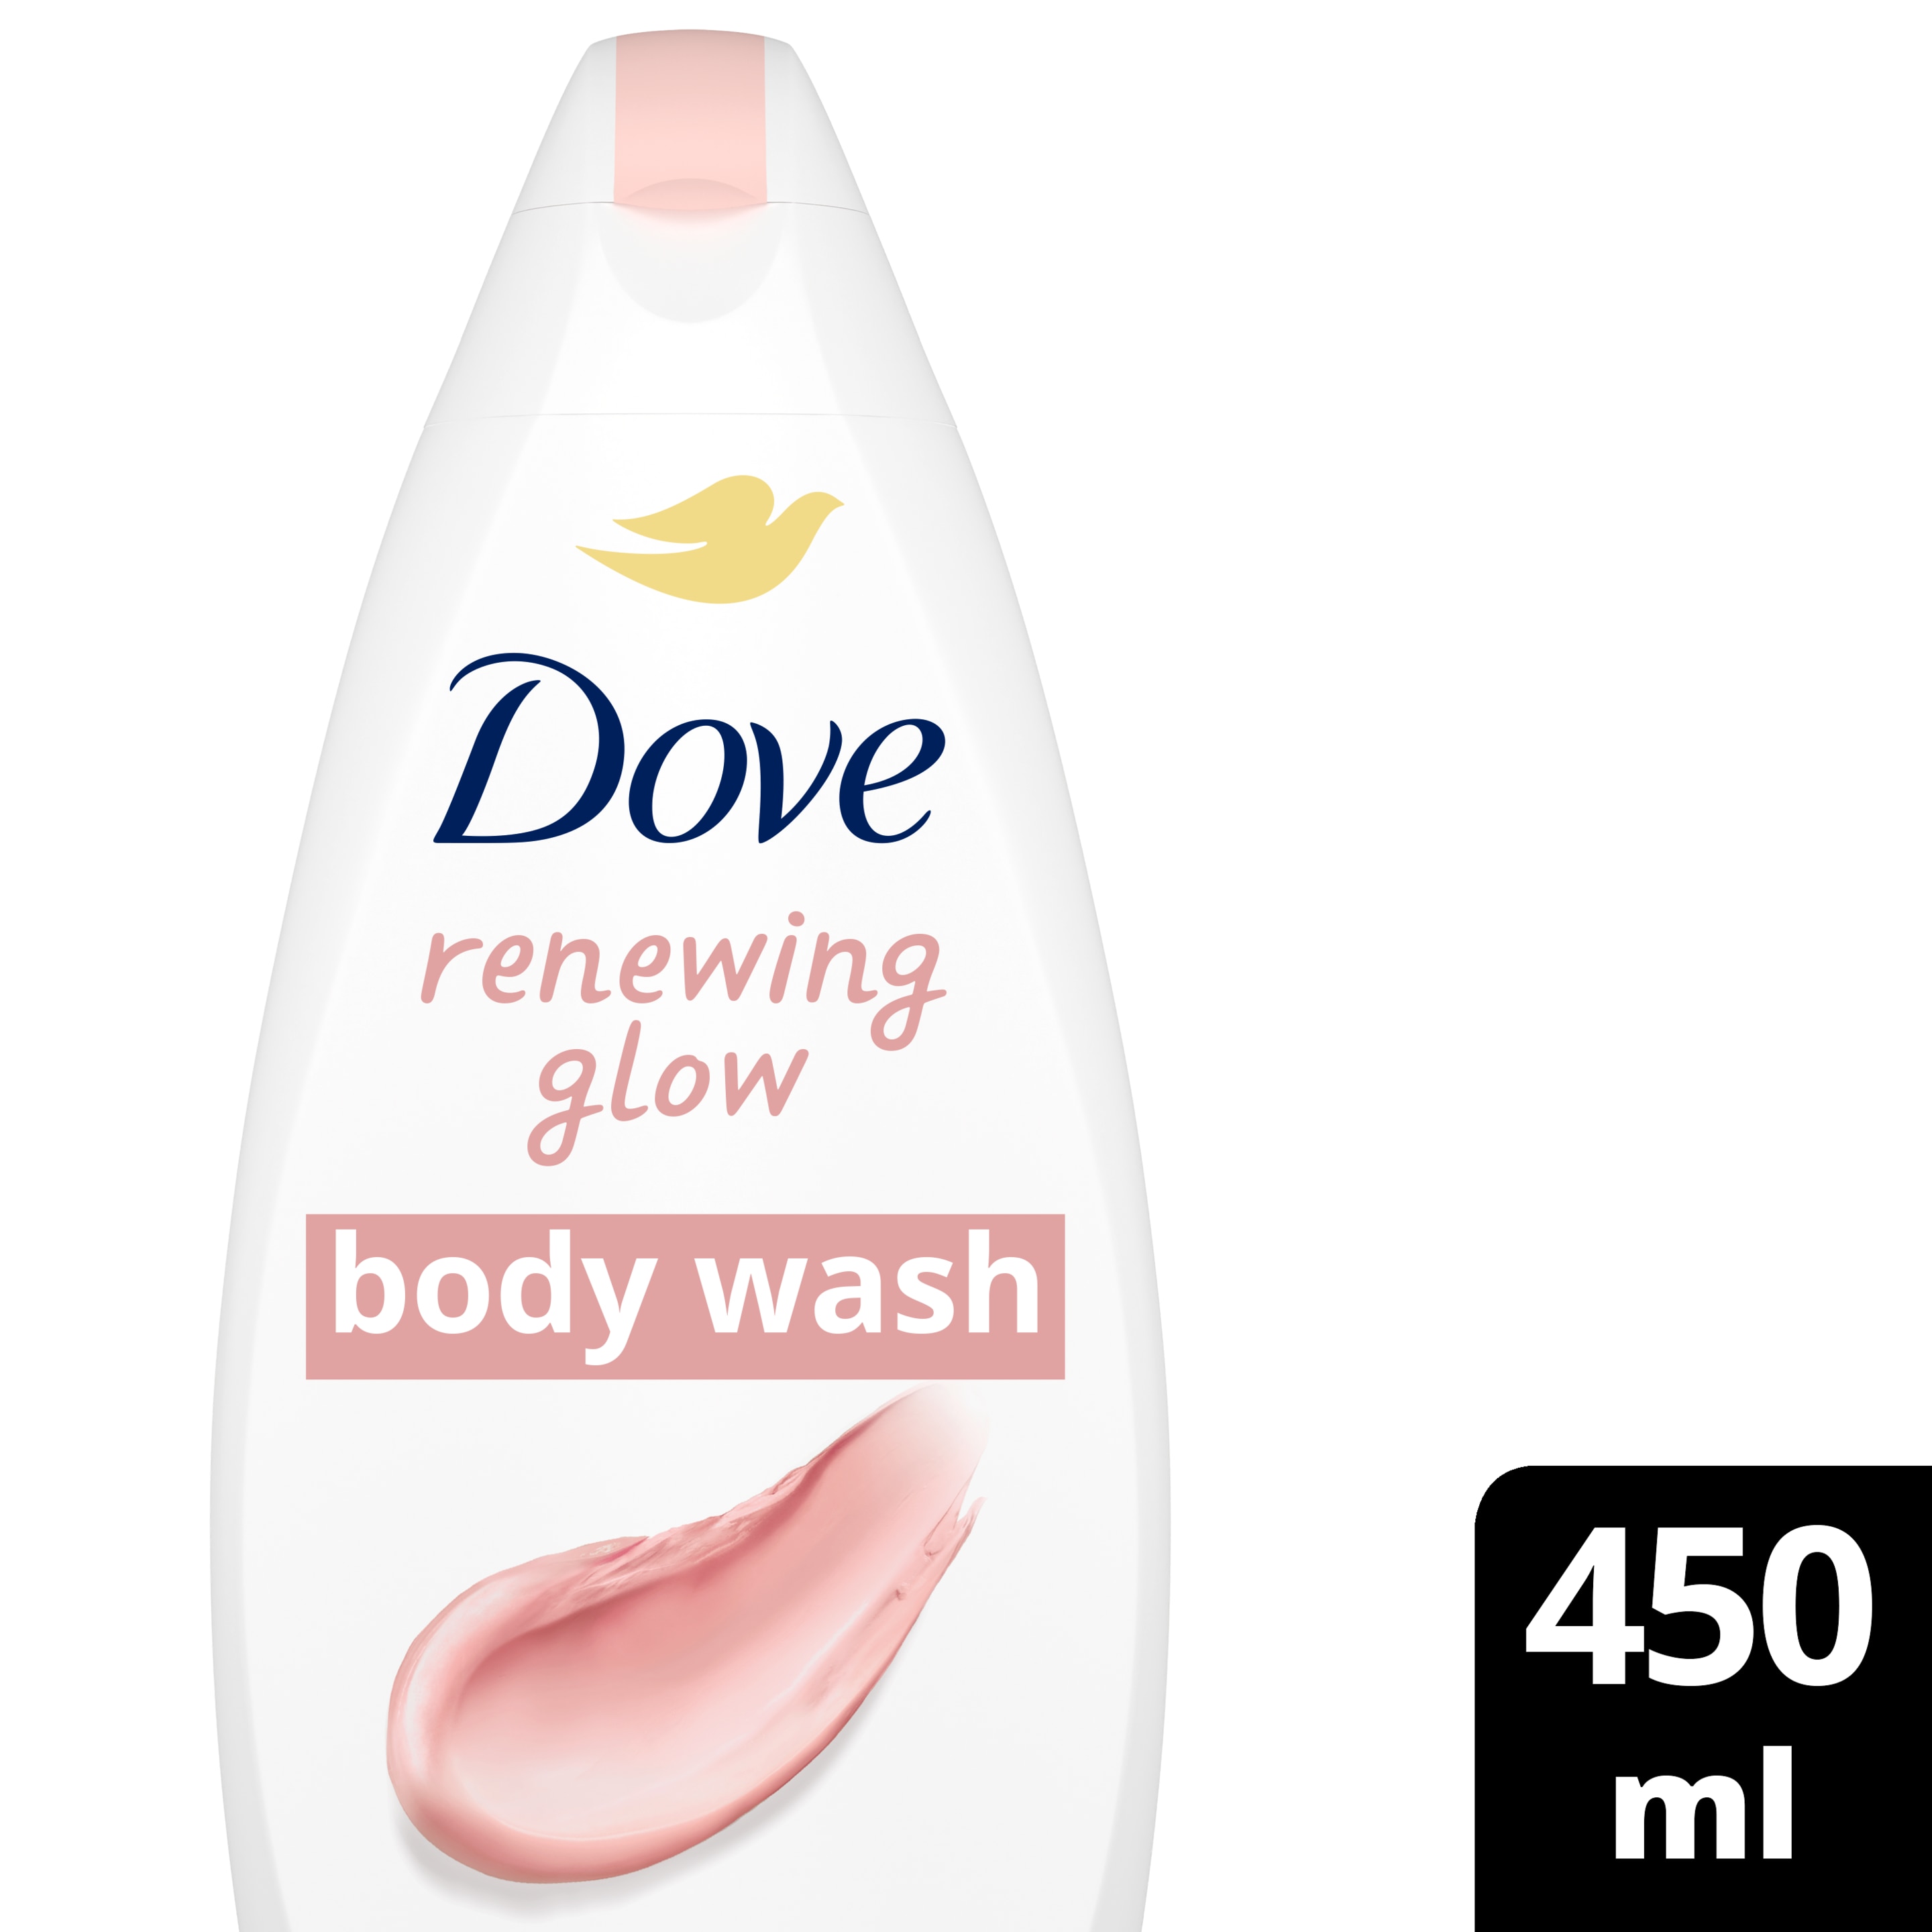 Dove Renewing Glow Body Wash 450ml